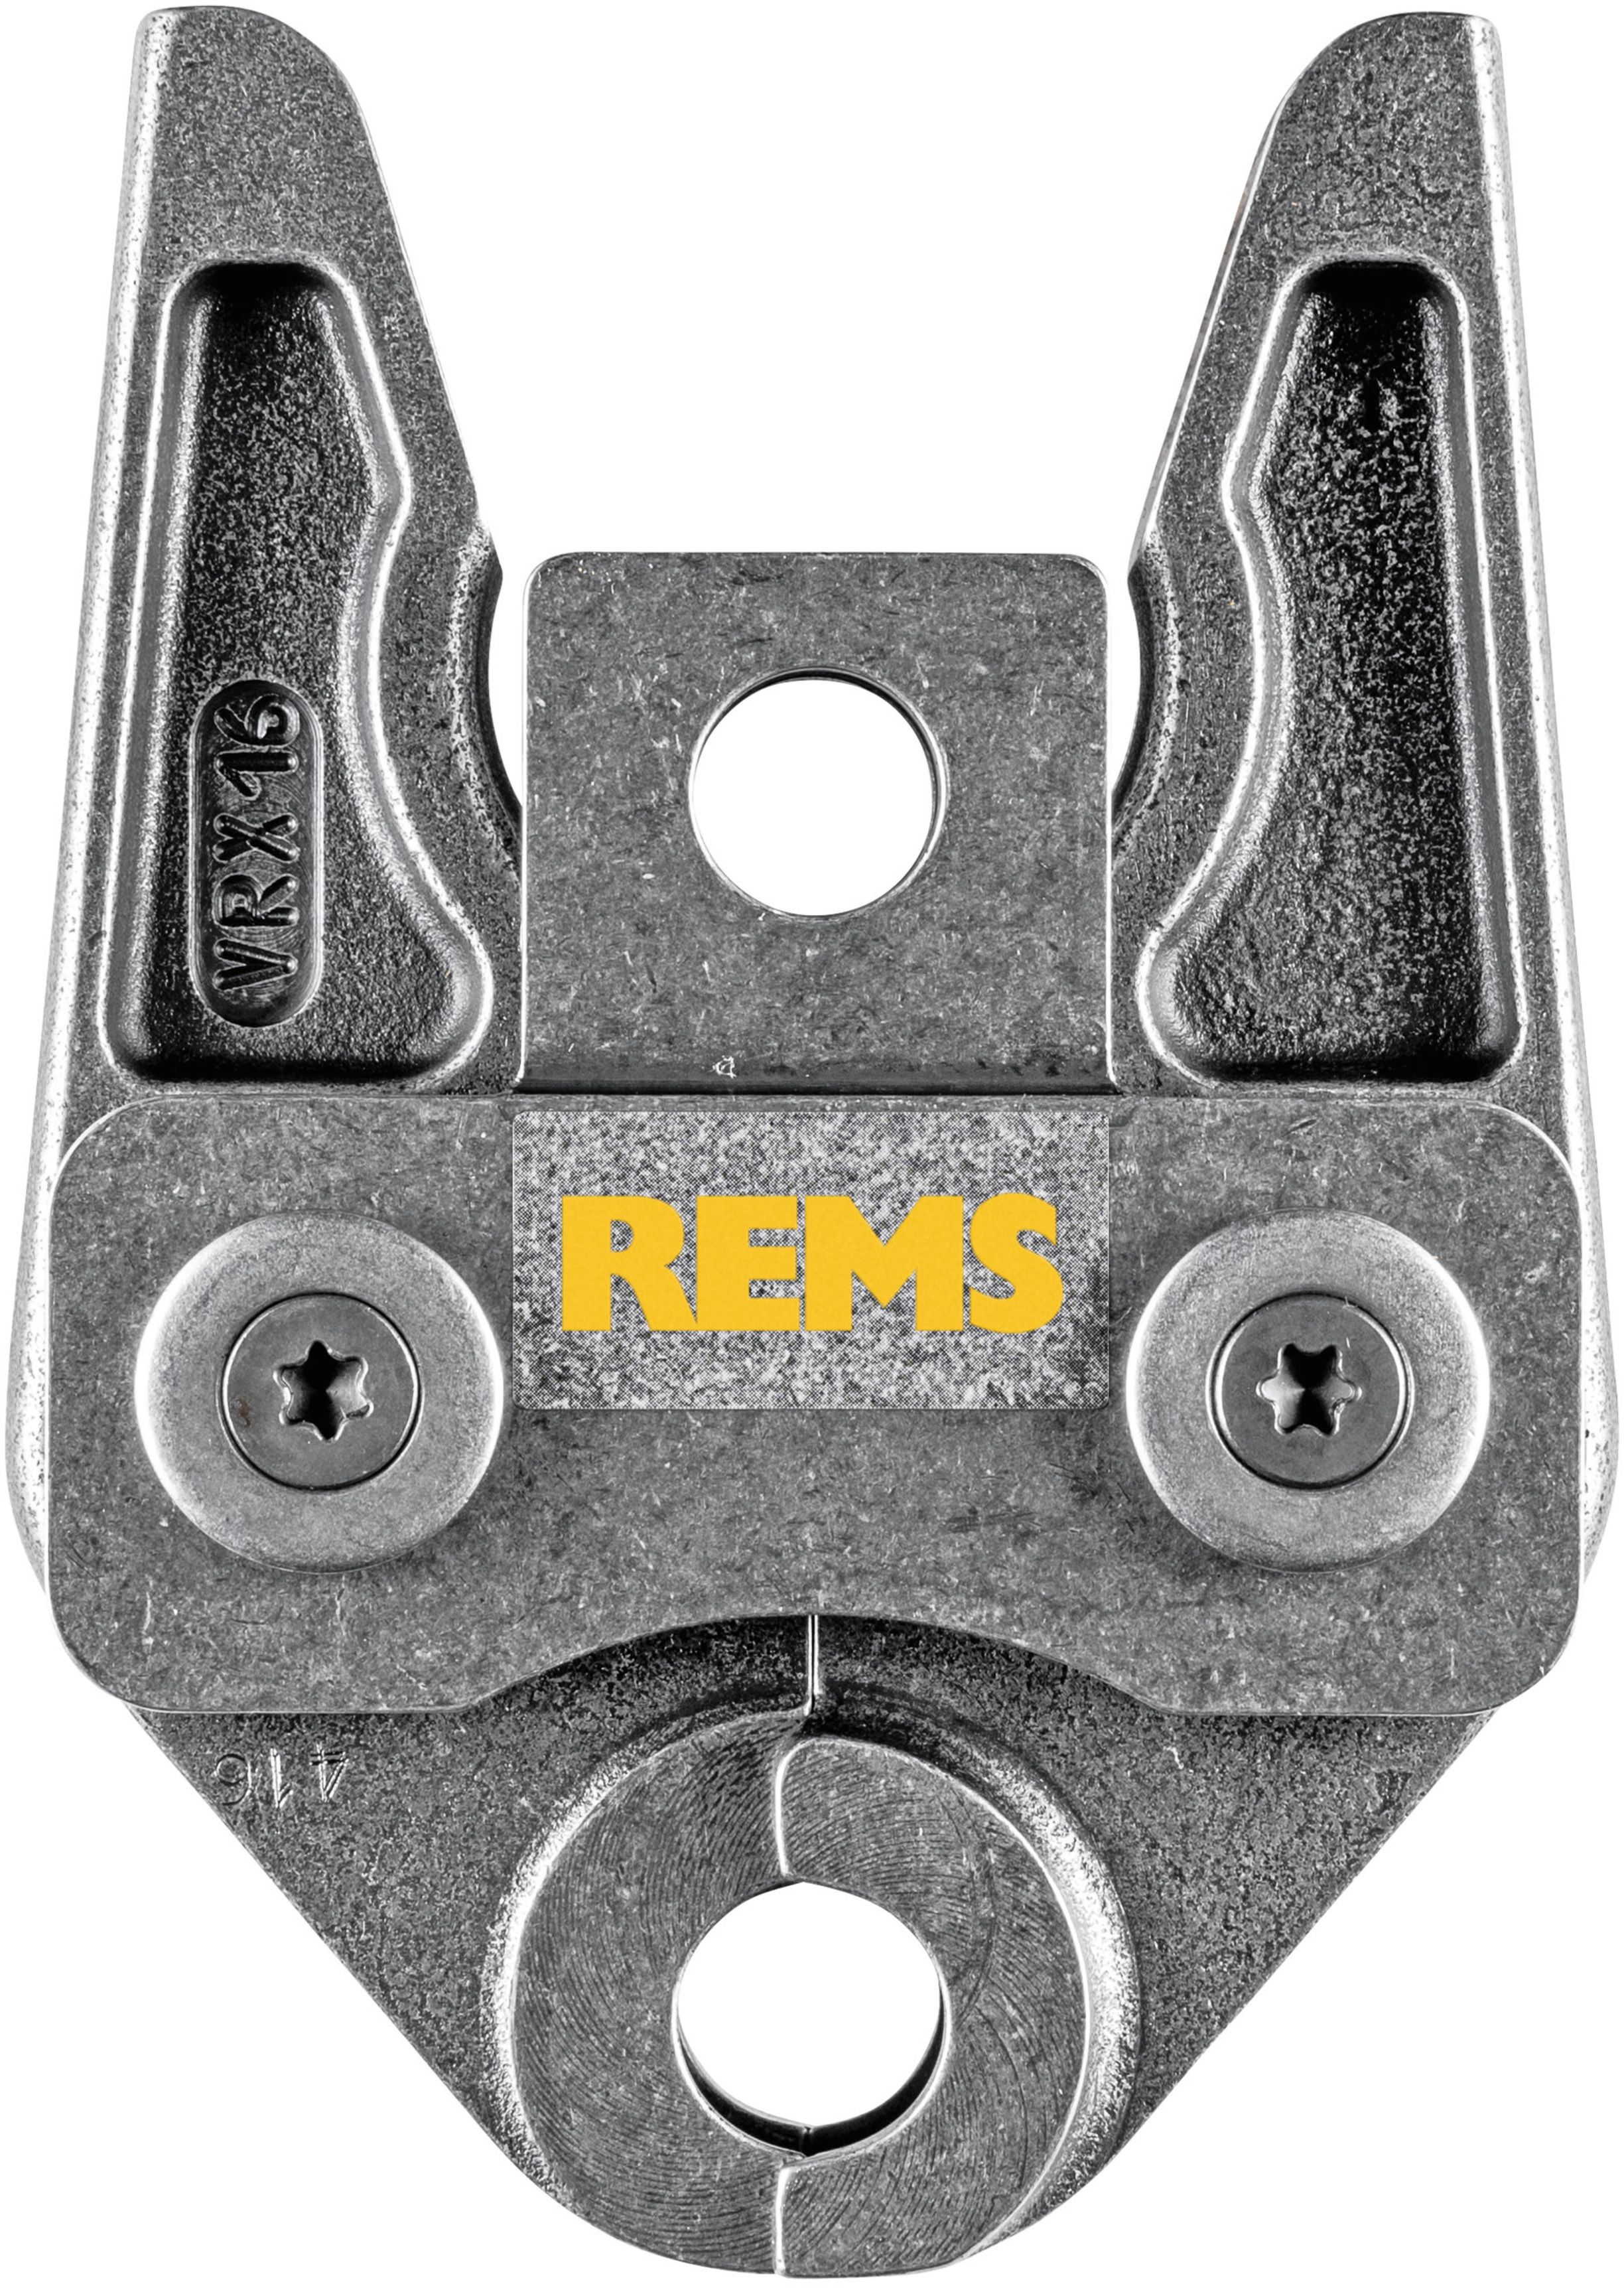 REMS Presszange 571754, VRX 25 - Sanitärwerkzeuge